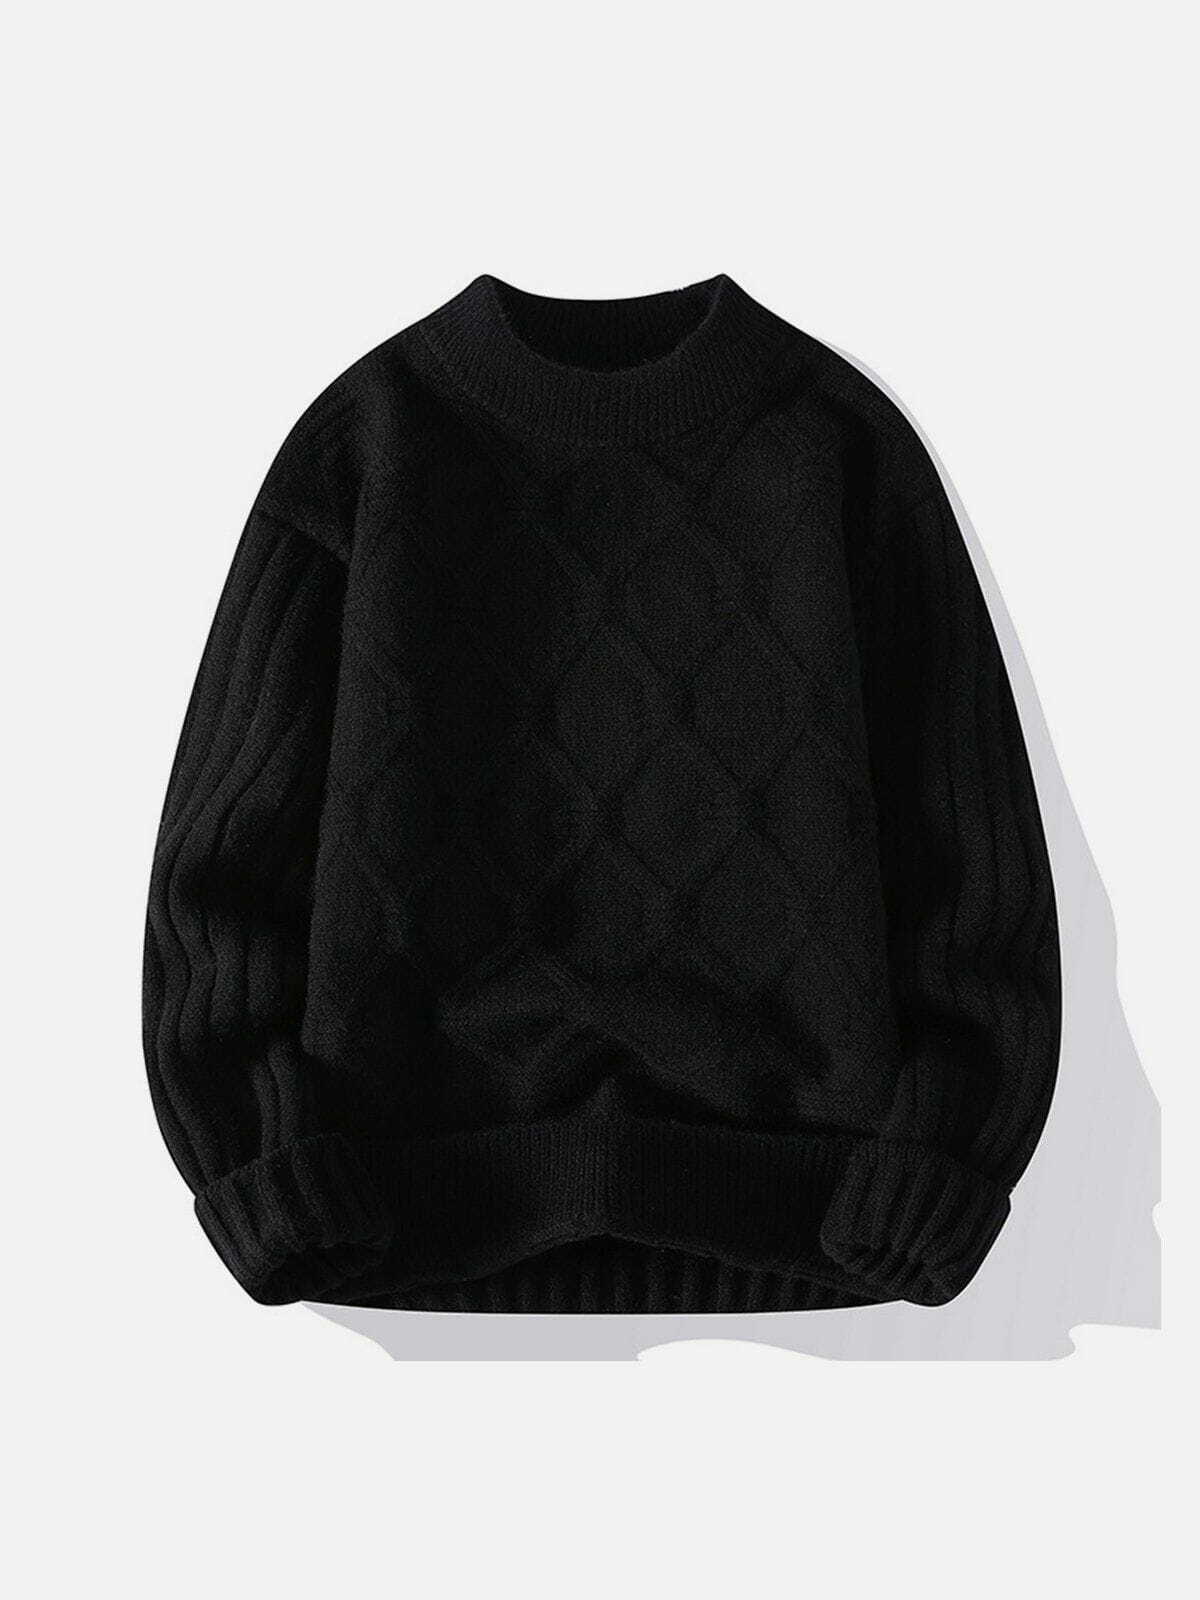 net jacquard sweater sleek & edgy streetwear 2713